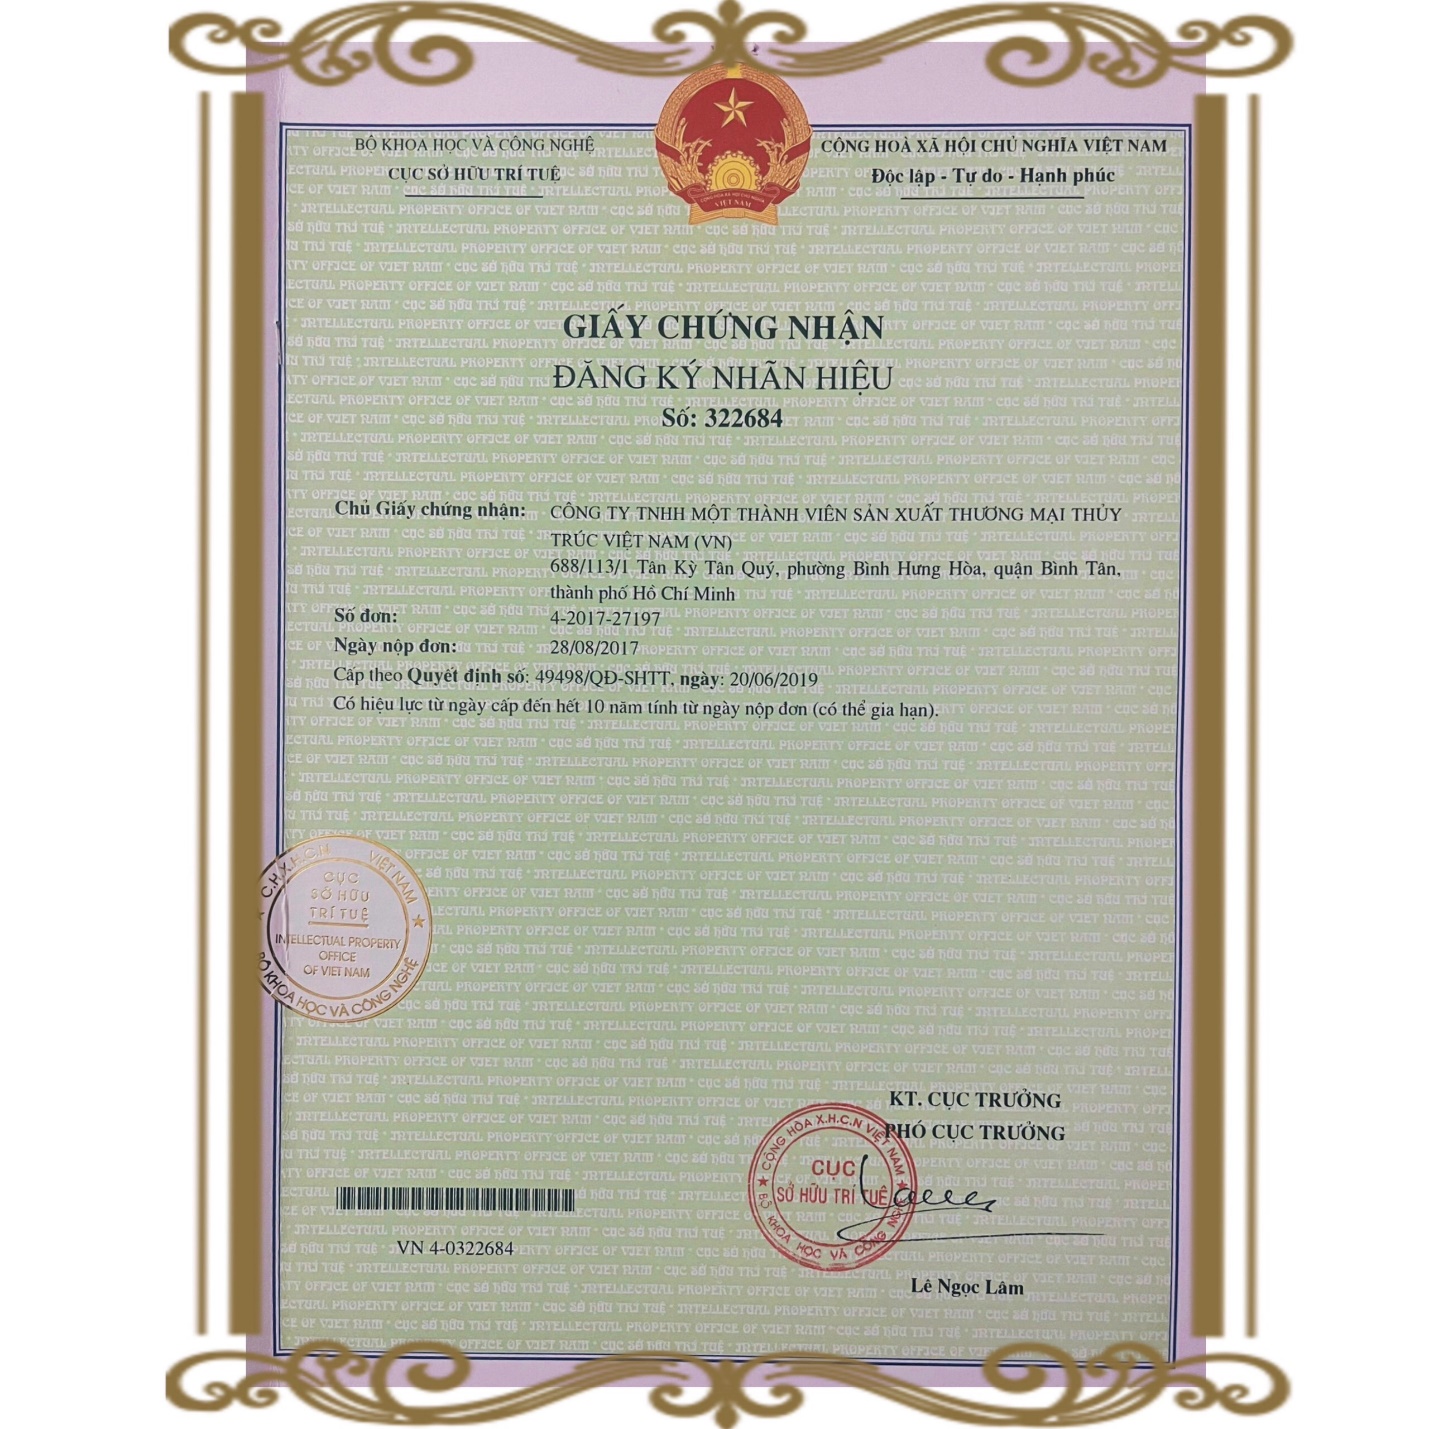 Mỹ phẩm “Miền Thảo Mộc” được Cục Sở hữu Trí tuệ Việt Nam cấp văn bằng bảo hộ độc quyền - ảnh 1